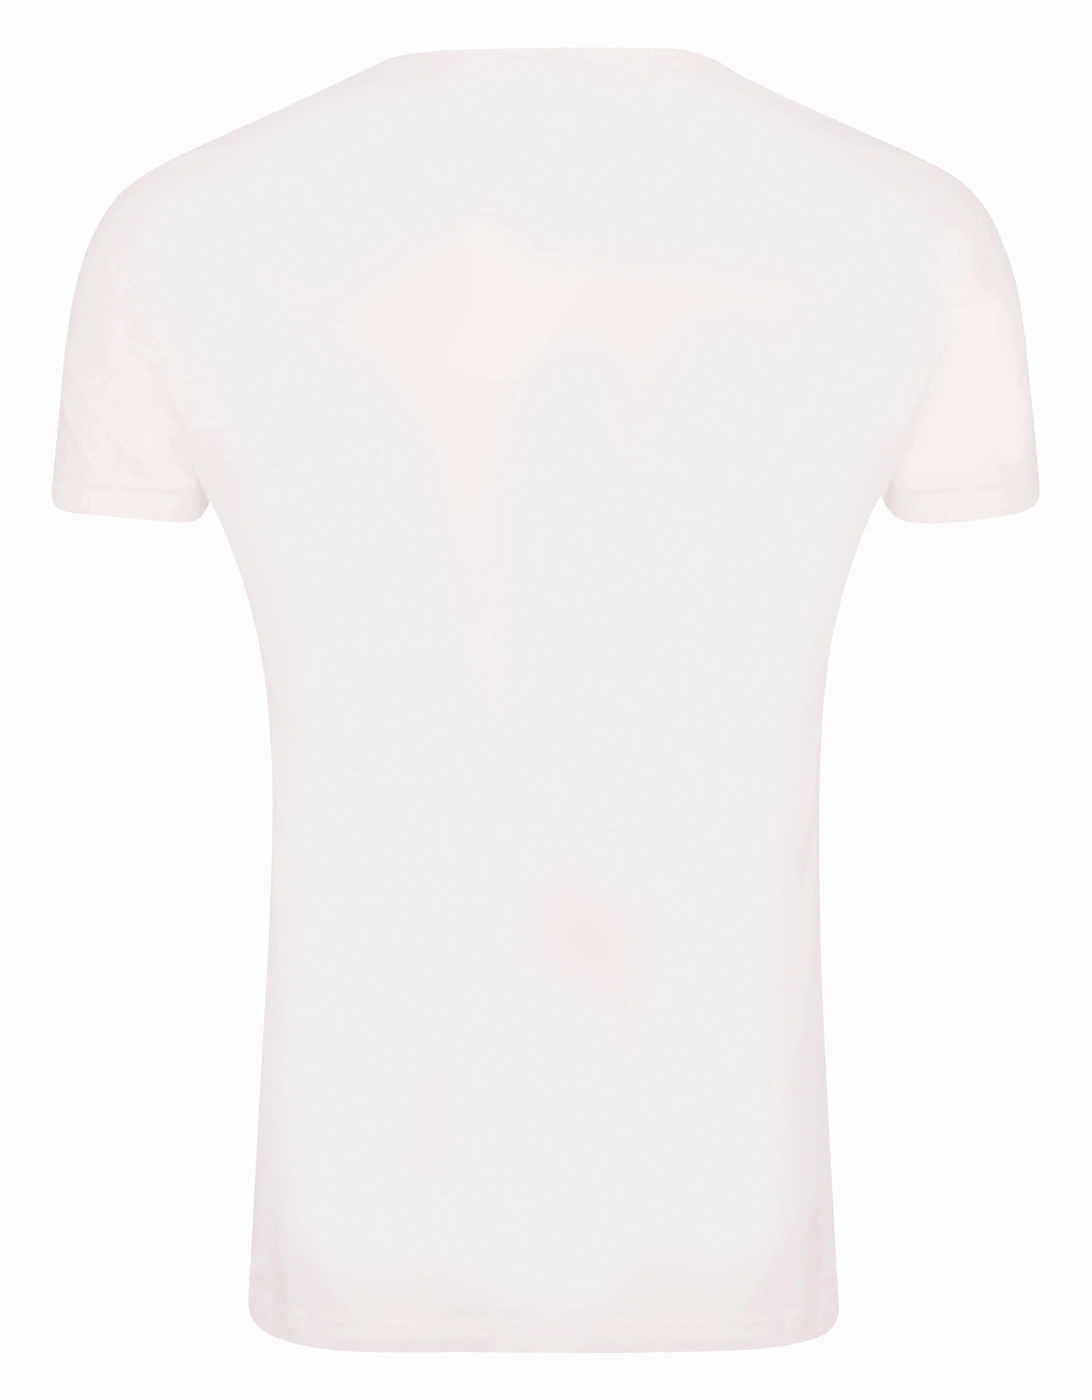 Unisex Adult Get Back Gradient Cotton T-Shirt